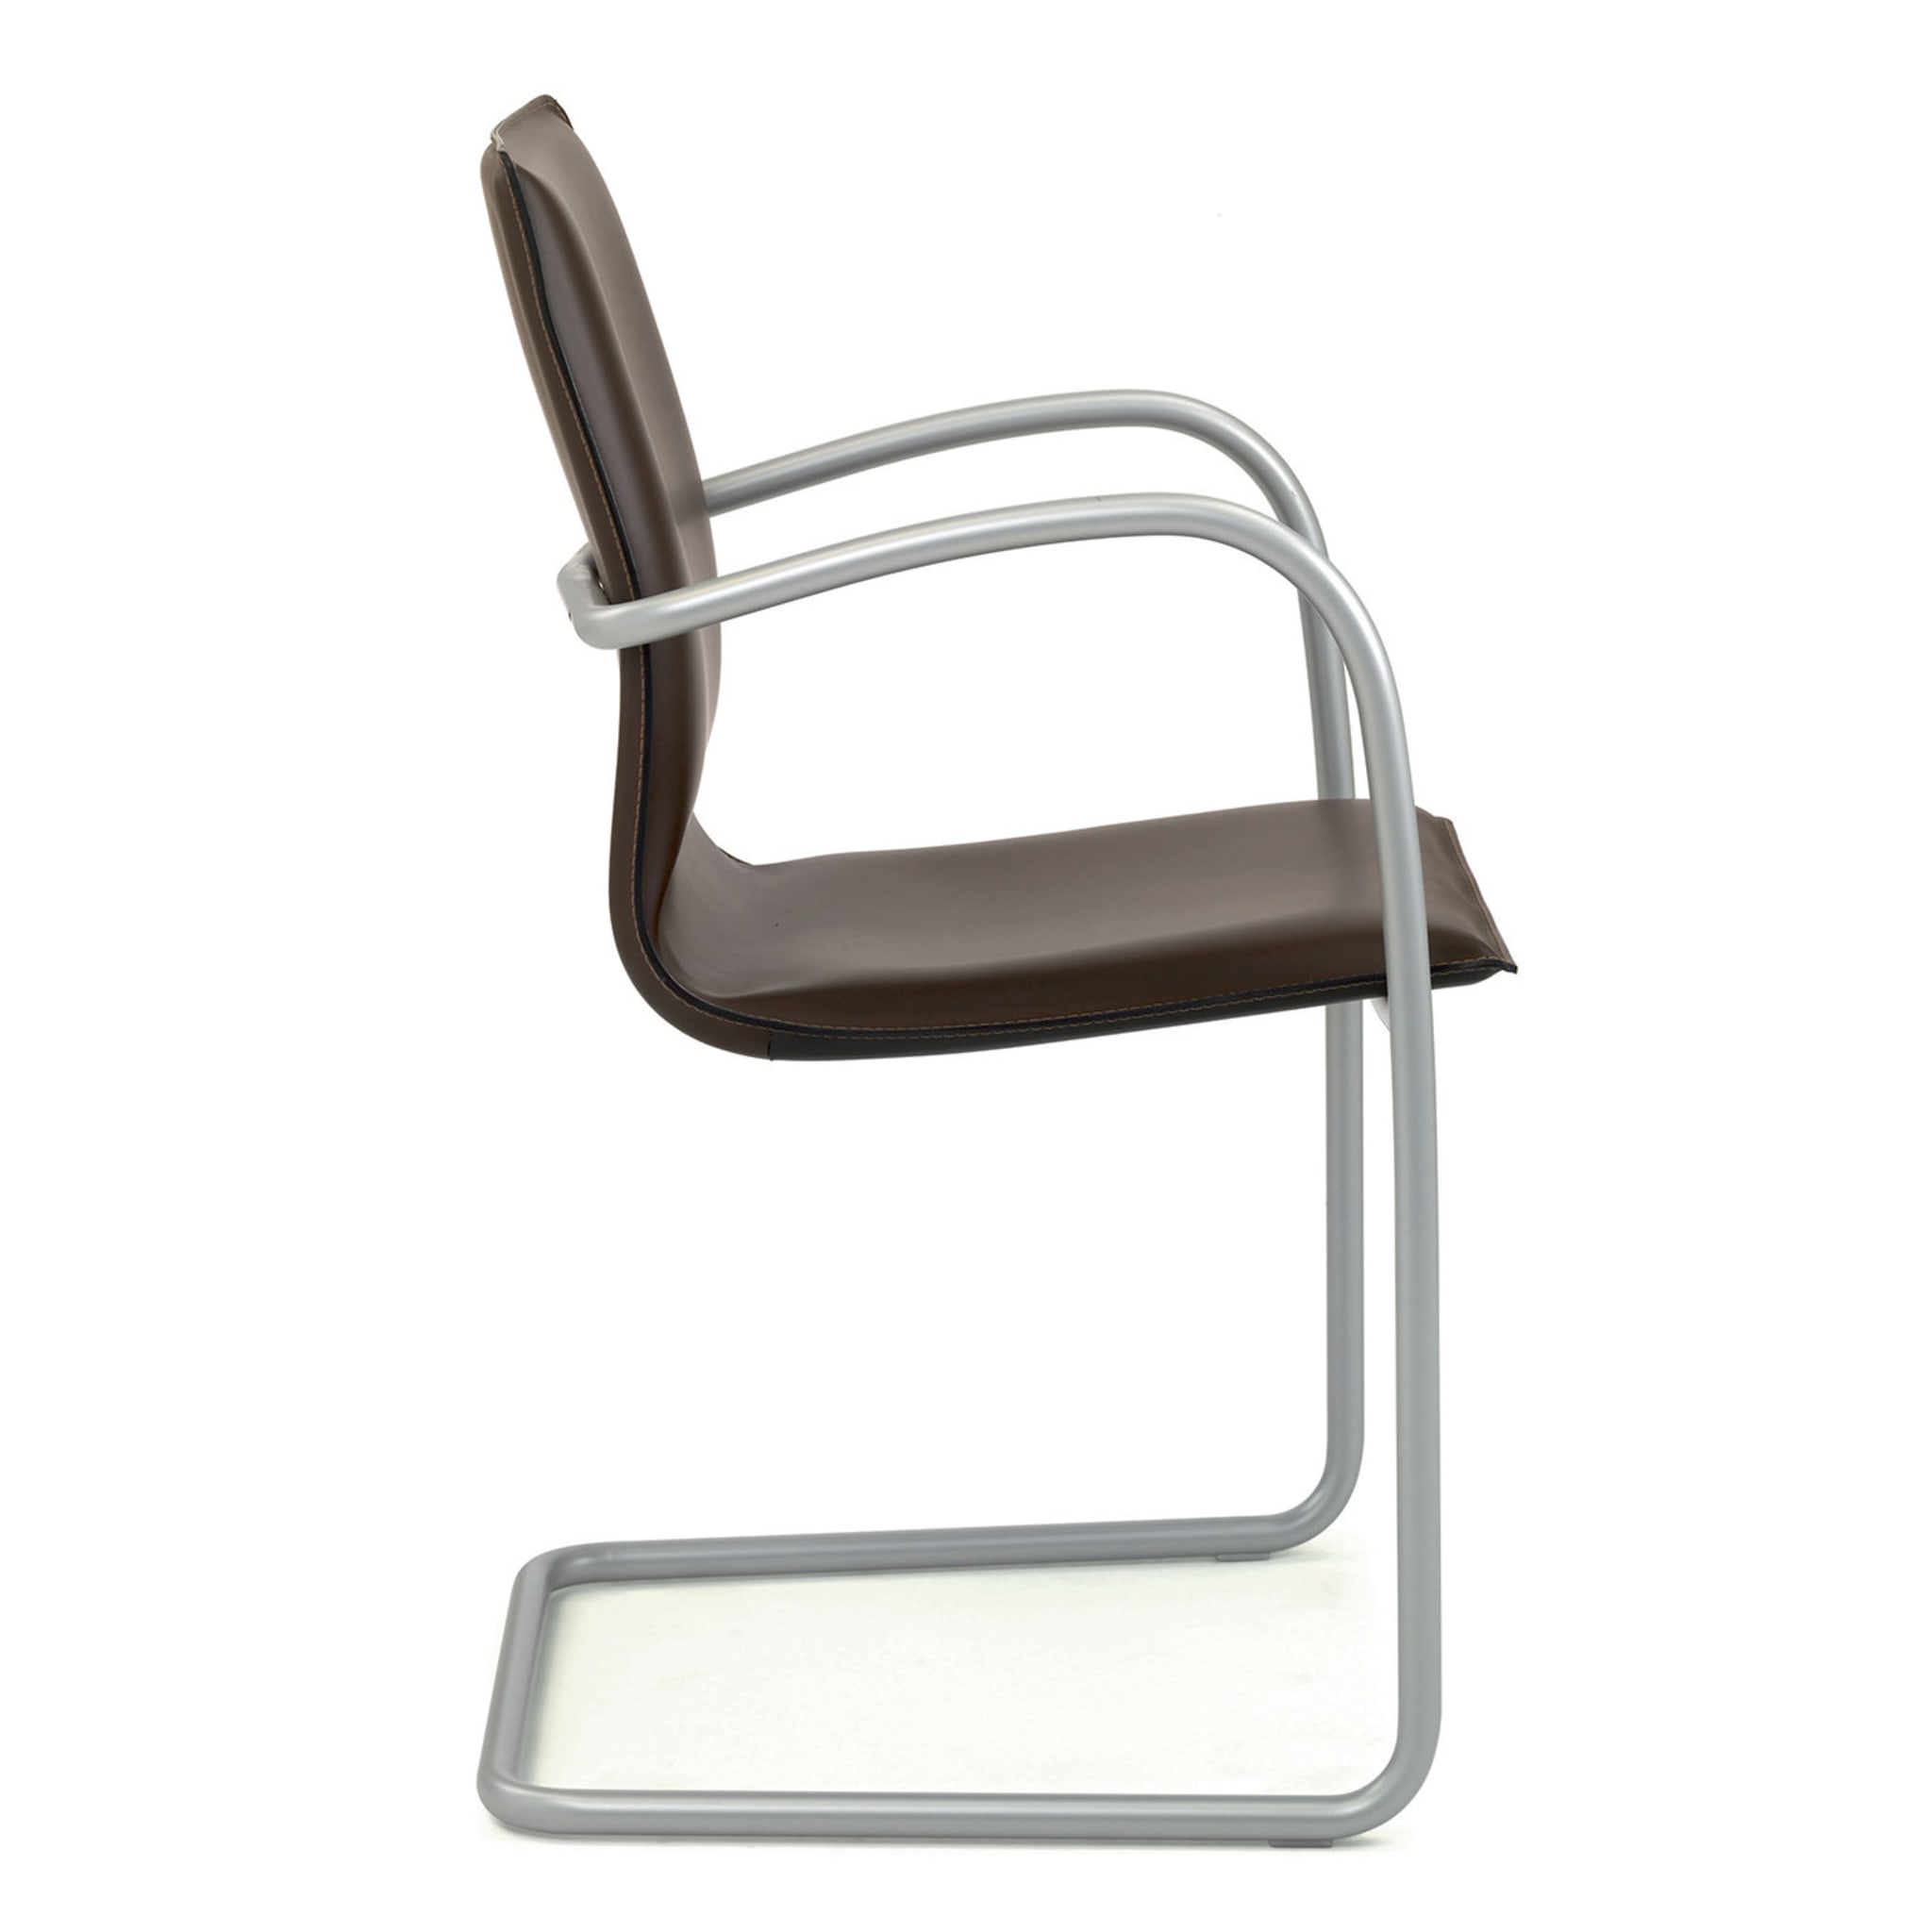 Micad Comfort Sessel von Michele Cadore - Alternative Ansicht 1